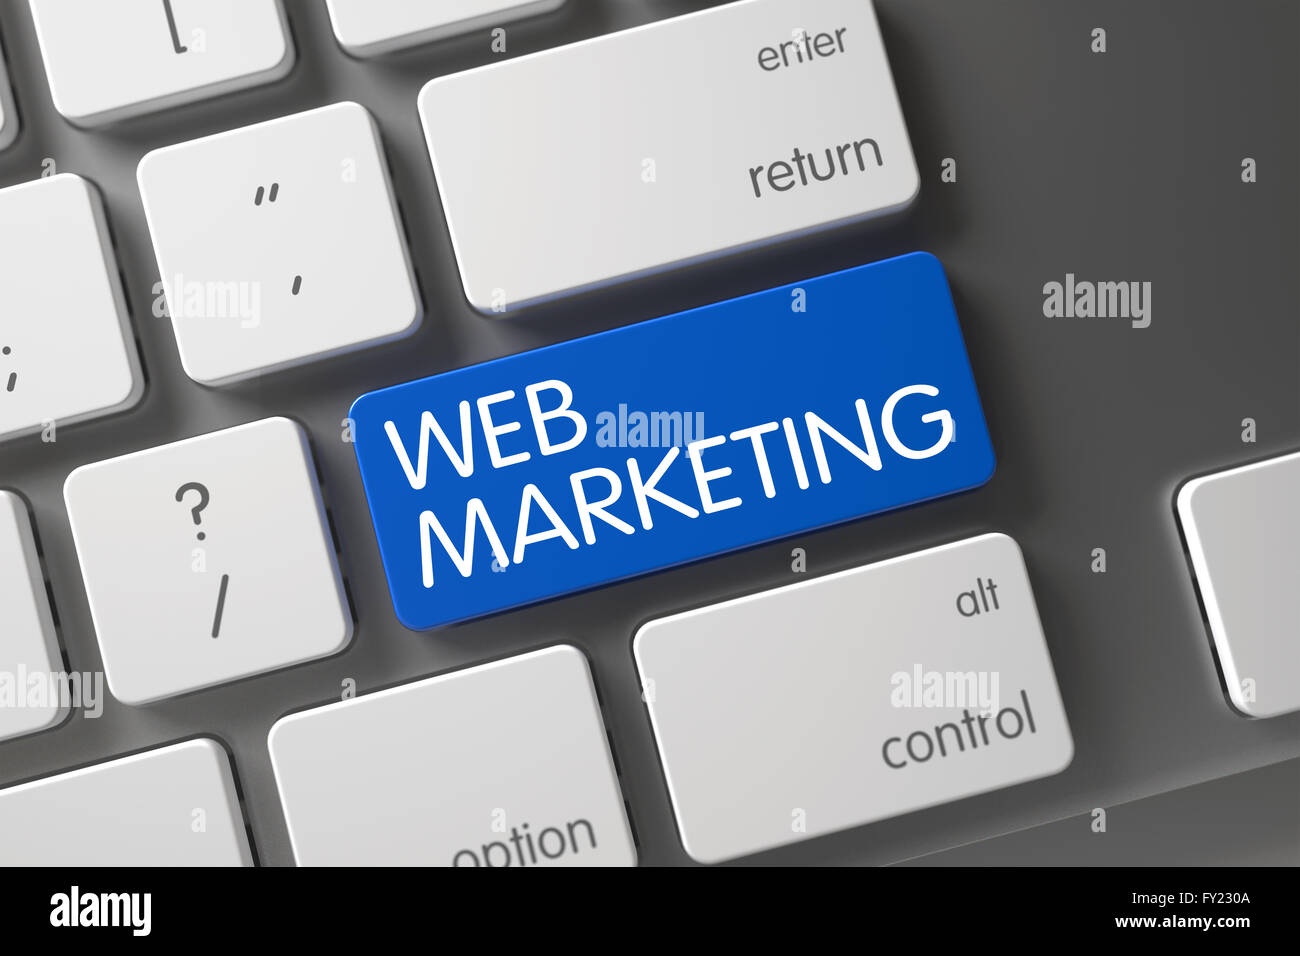 Web Marketing CloseUp of Keyboard. Stock Photo